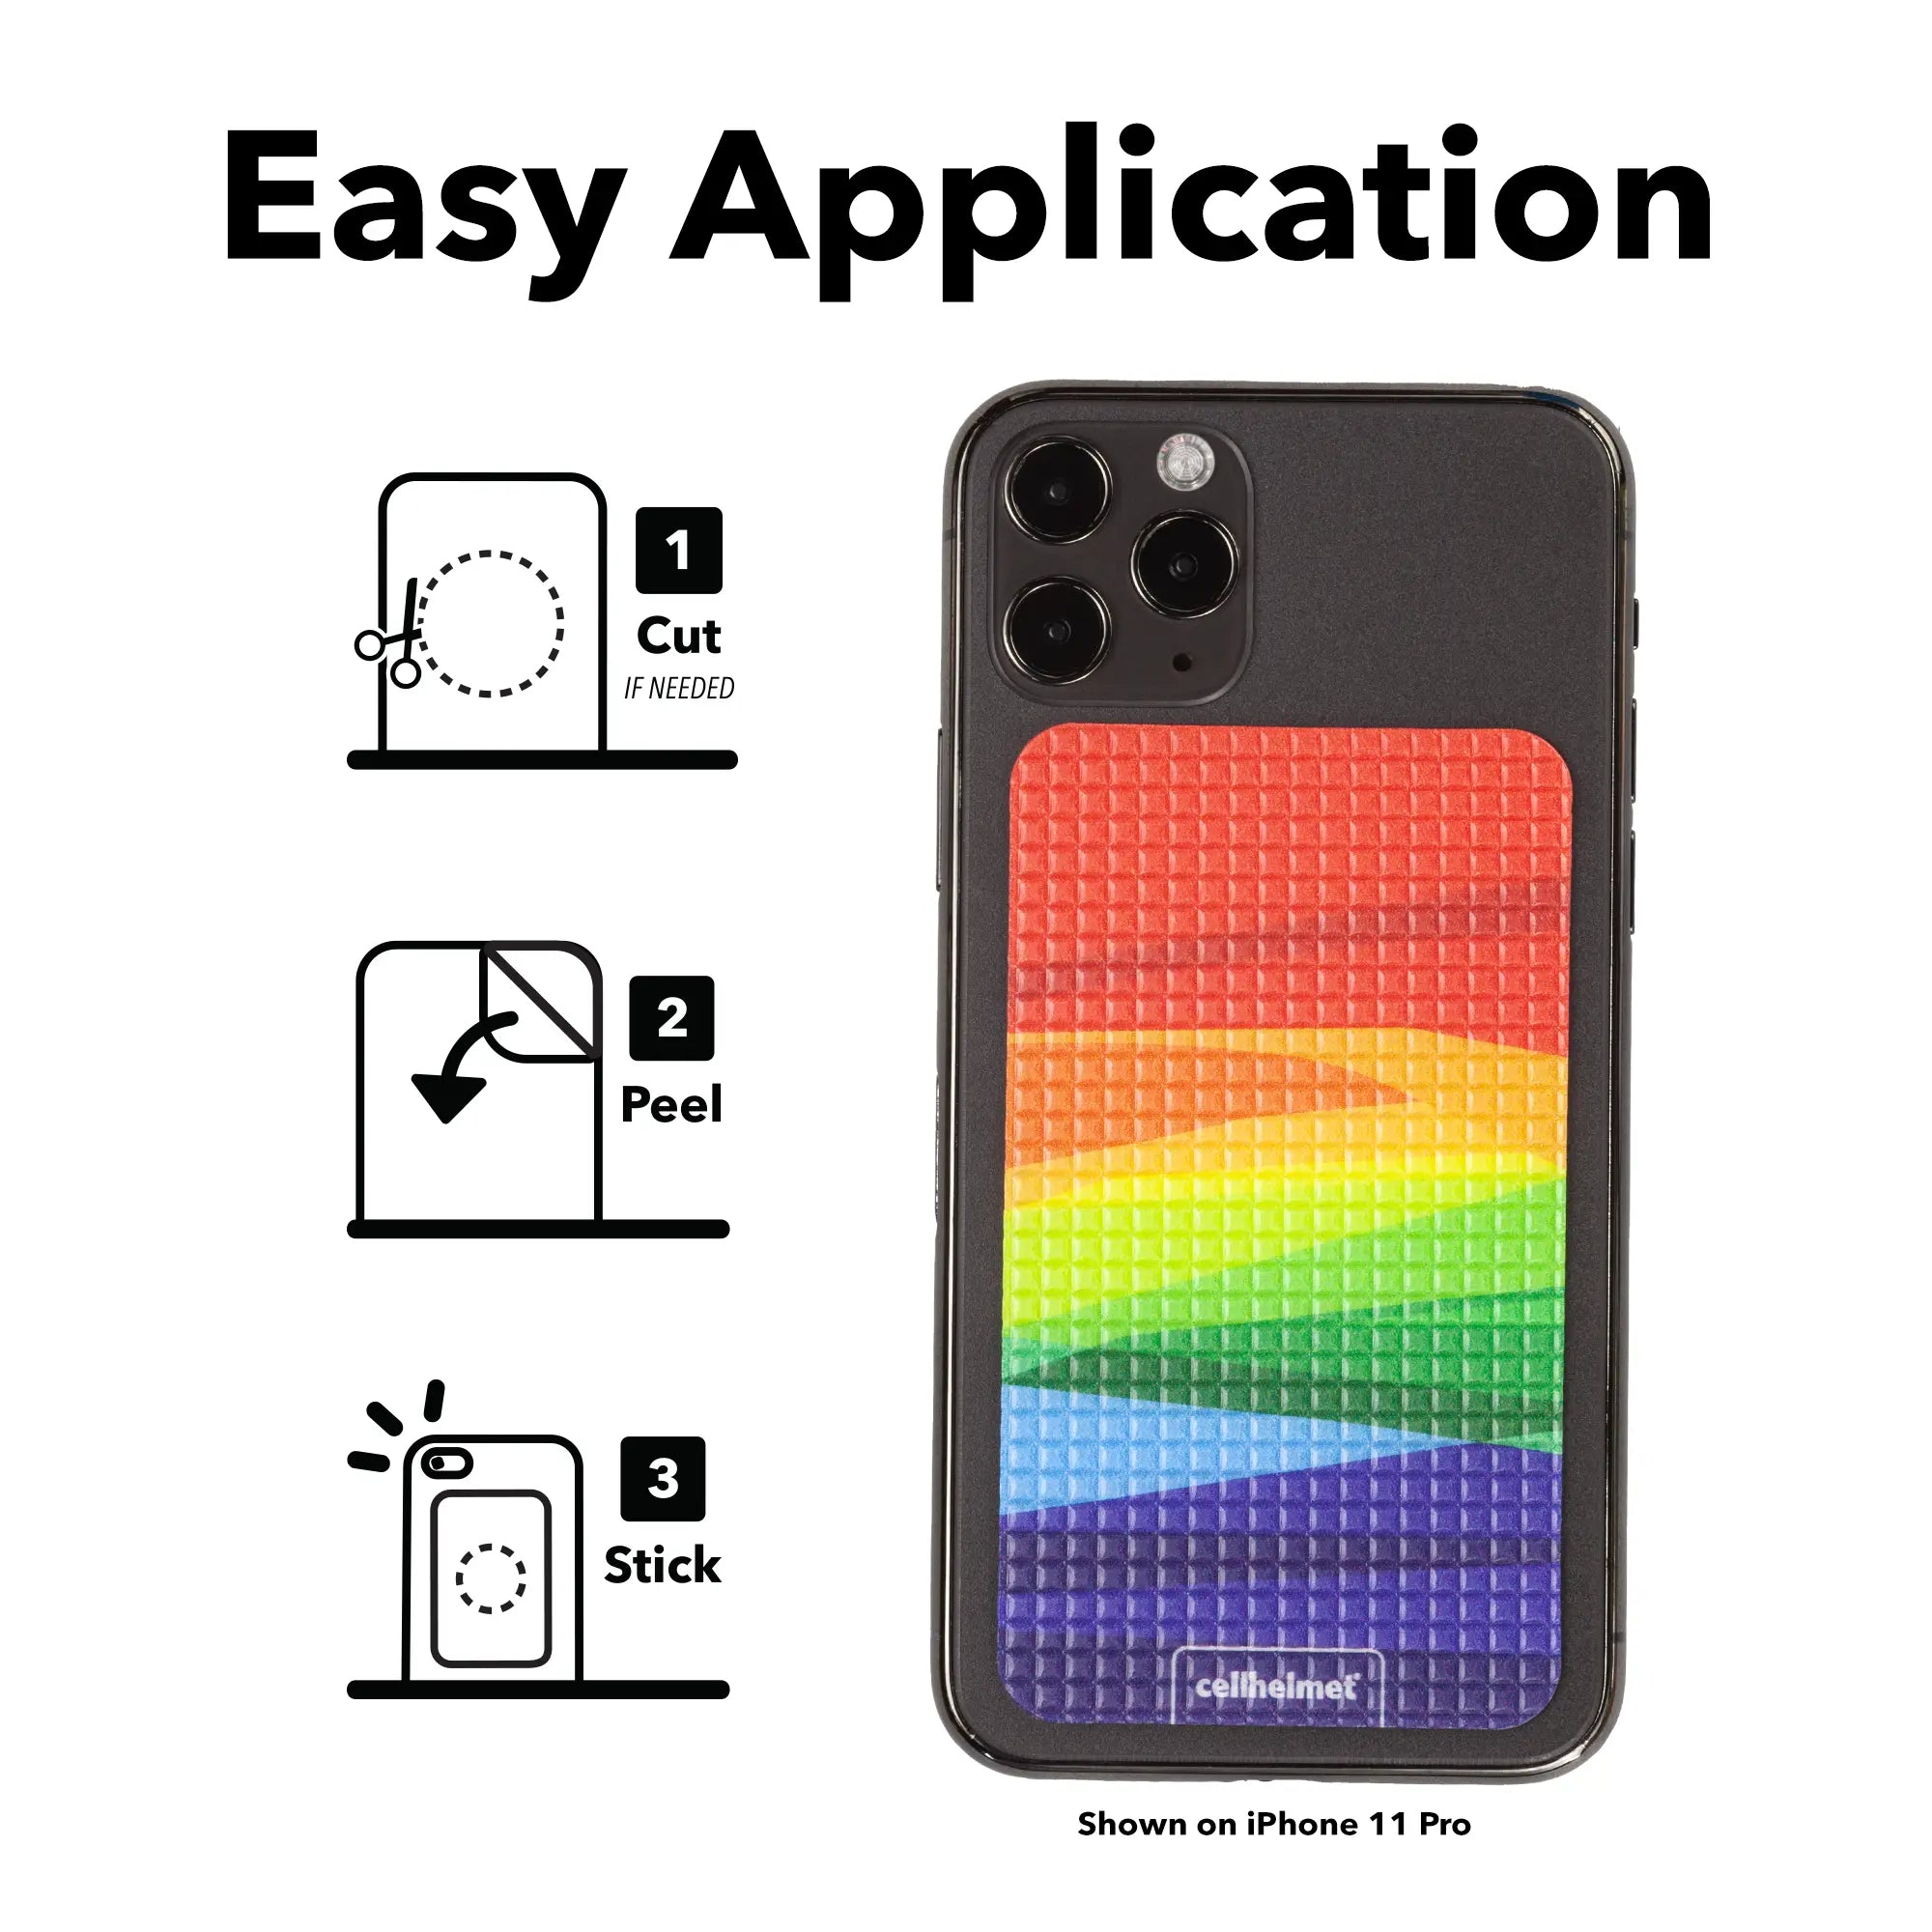 tackbacks Over the Rainbow Phone Standard -  -  - cellhelmet